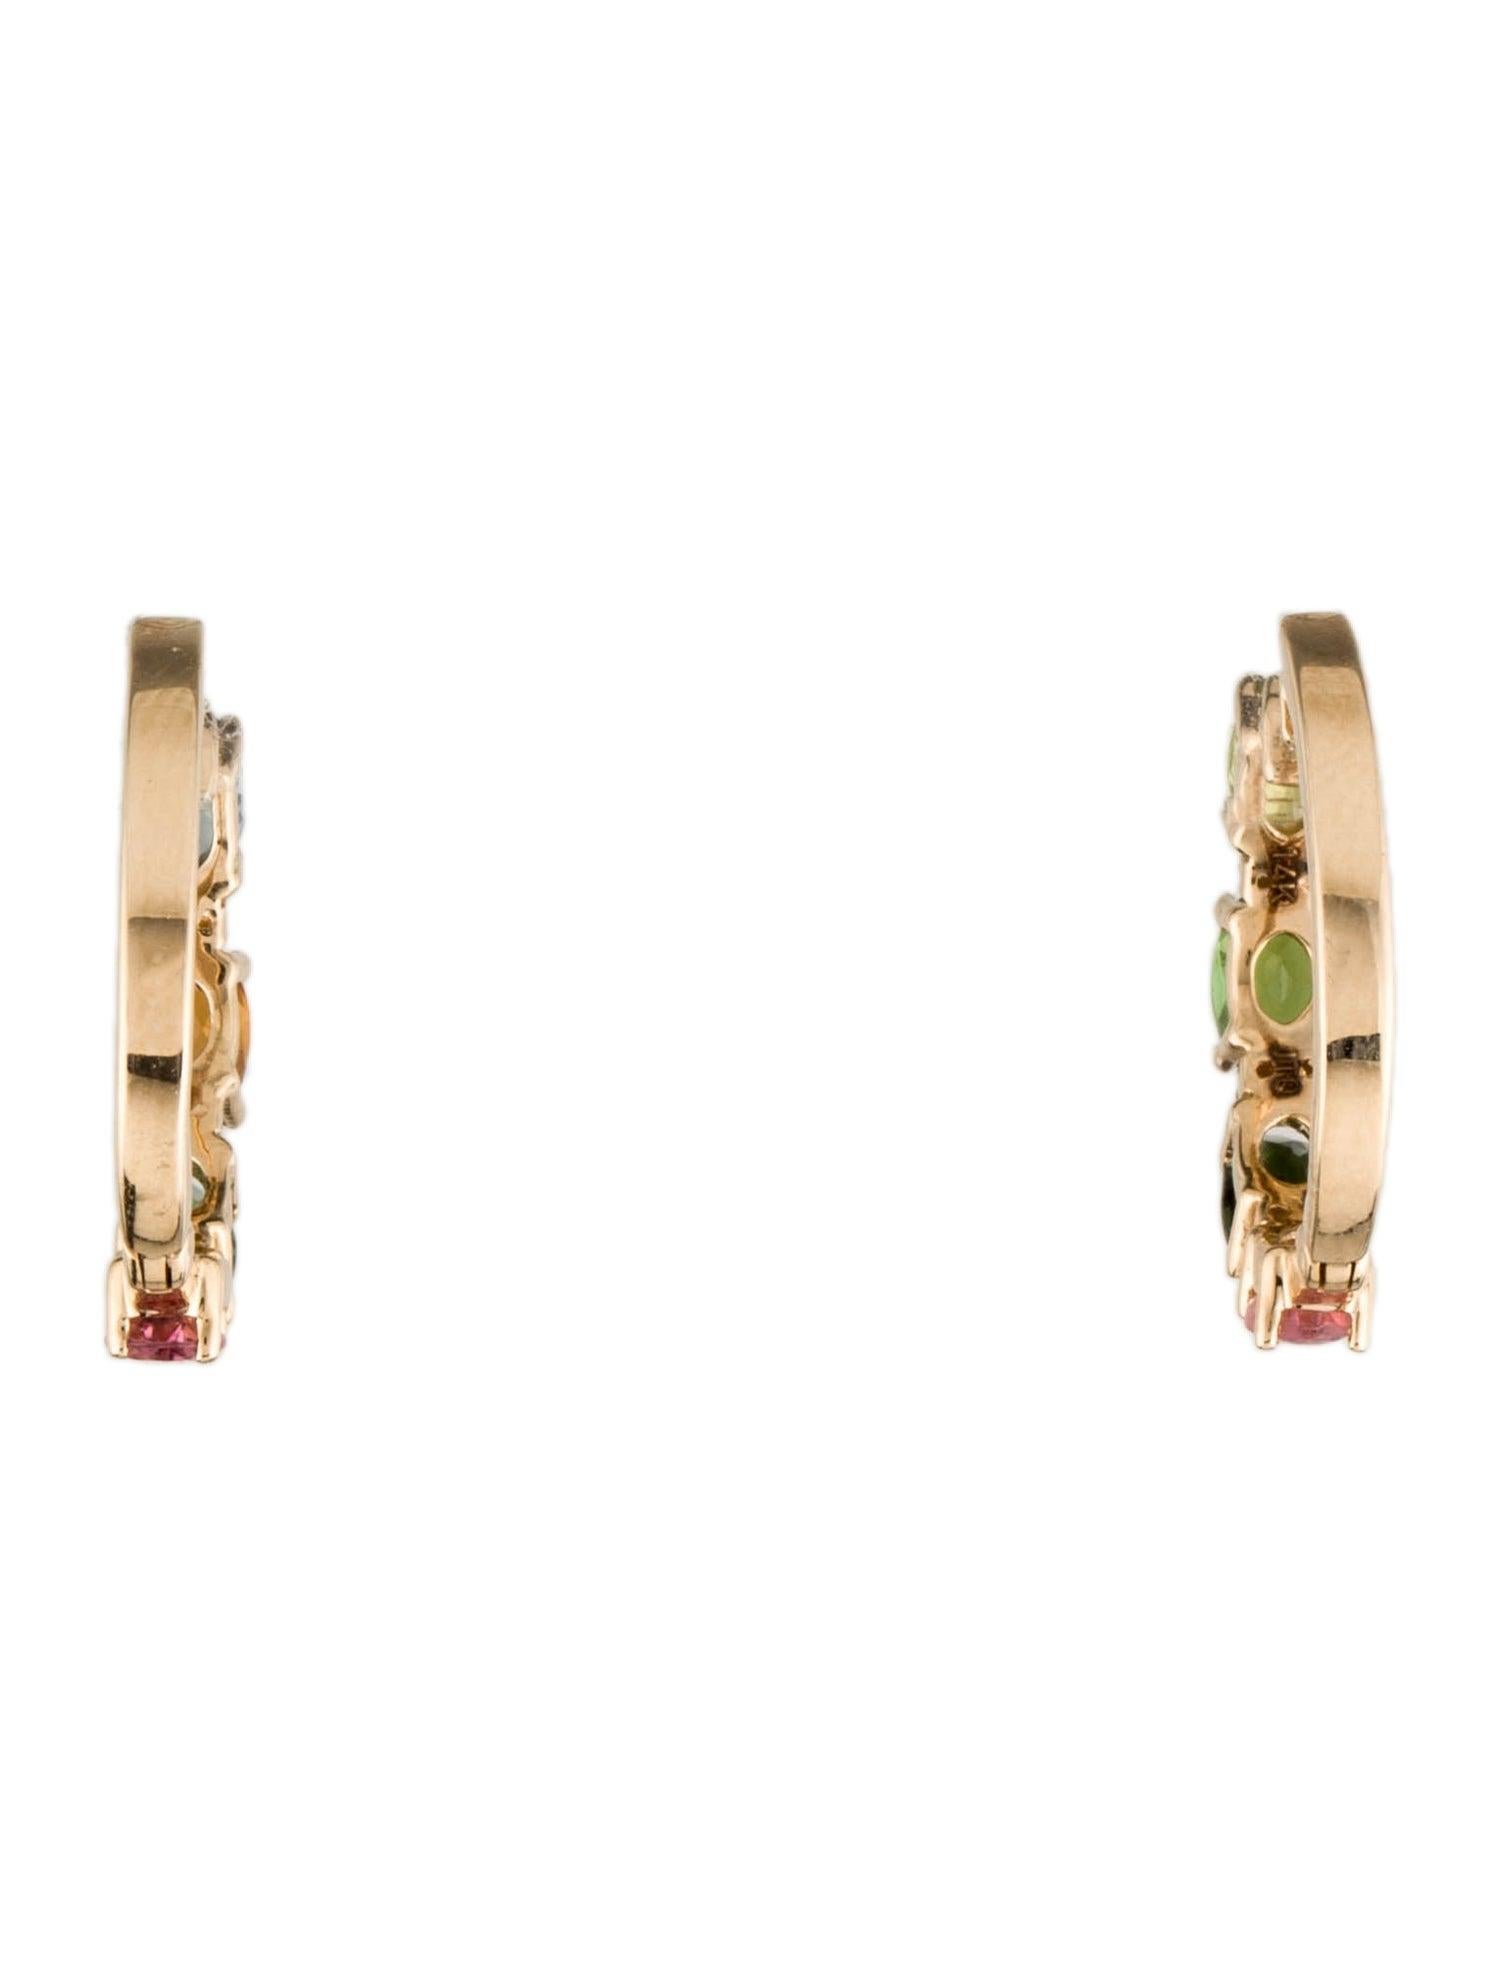 Oval Cut 14K Tourmaline & Diamond Hoop Earrings - 1.92ctw, Elegant Gemstone Jewelry For Sale